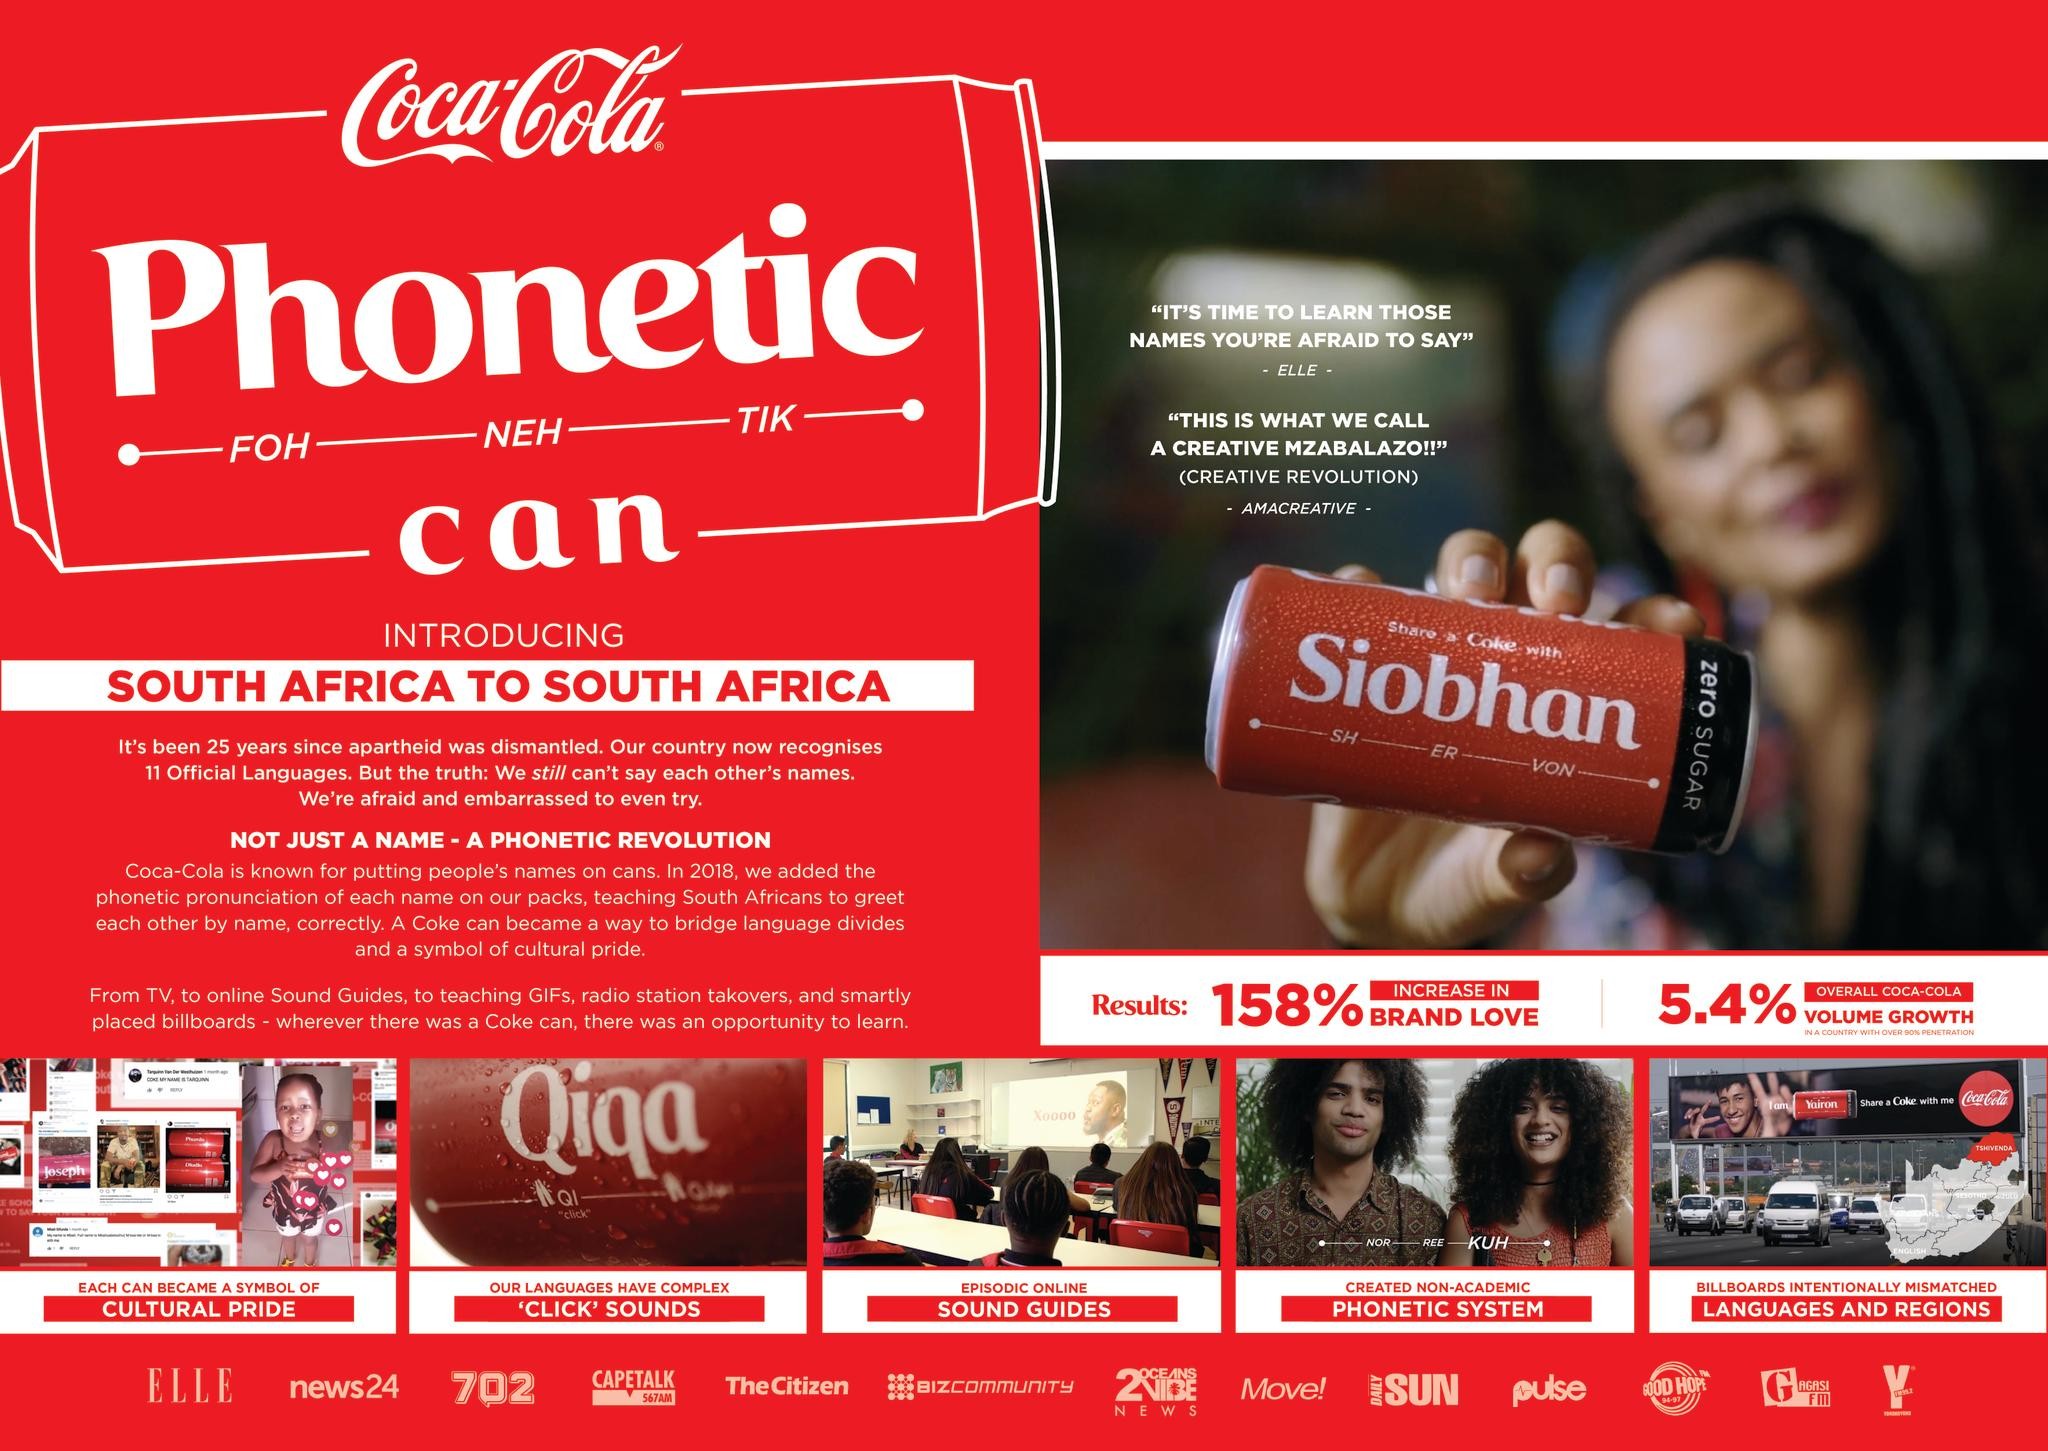 Share A Coke Campaign